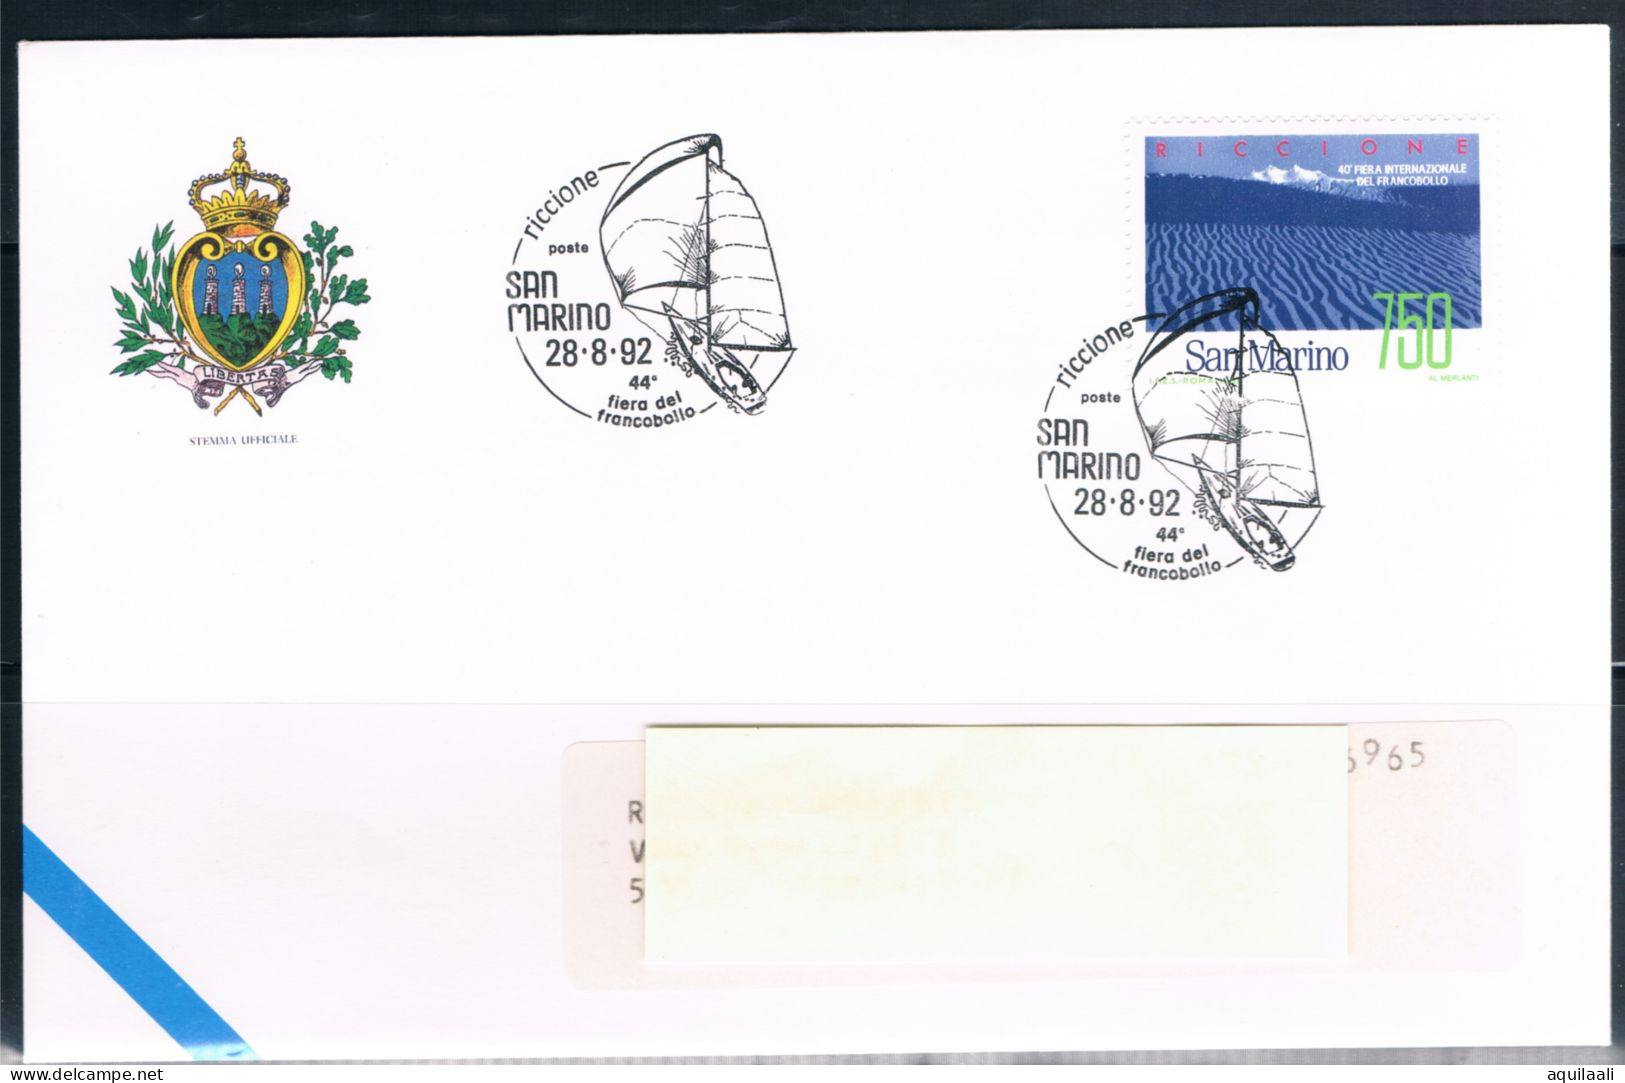 SAN MARINO 1992 - Riccione, 44' Fiera Del Francobollo, Annullo Speciale. - Briefmarkenausstellungen